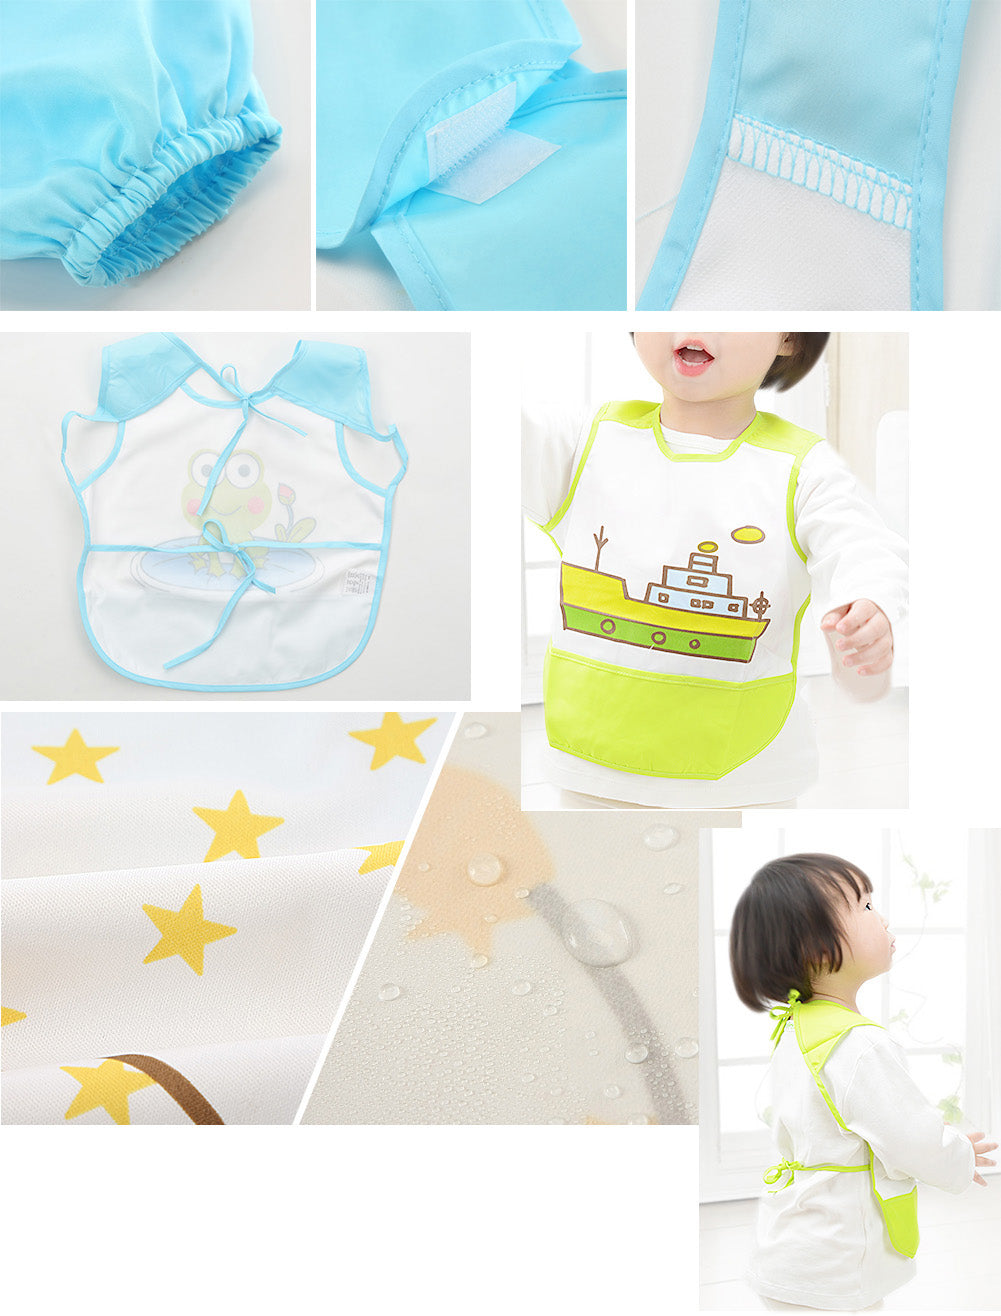 Waterproof Toddler Bib, Feeding Baby Apron, Soft Sleeveless Feeding/Cooking/Baking Bib Yellow #33